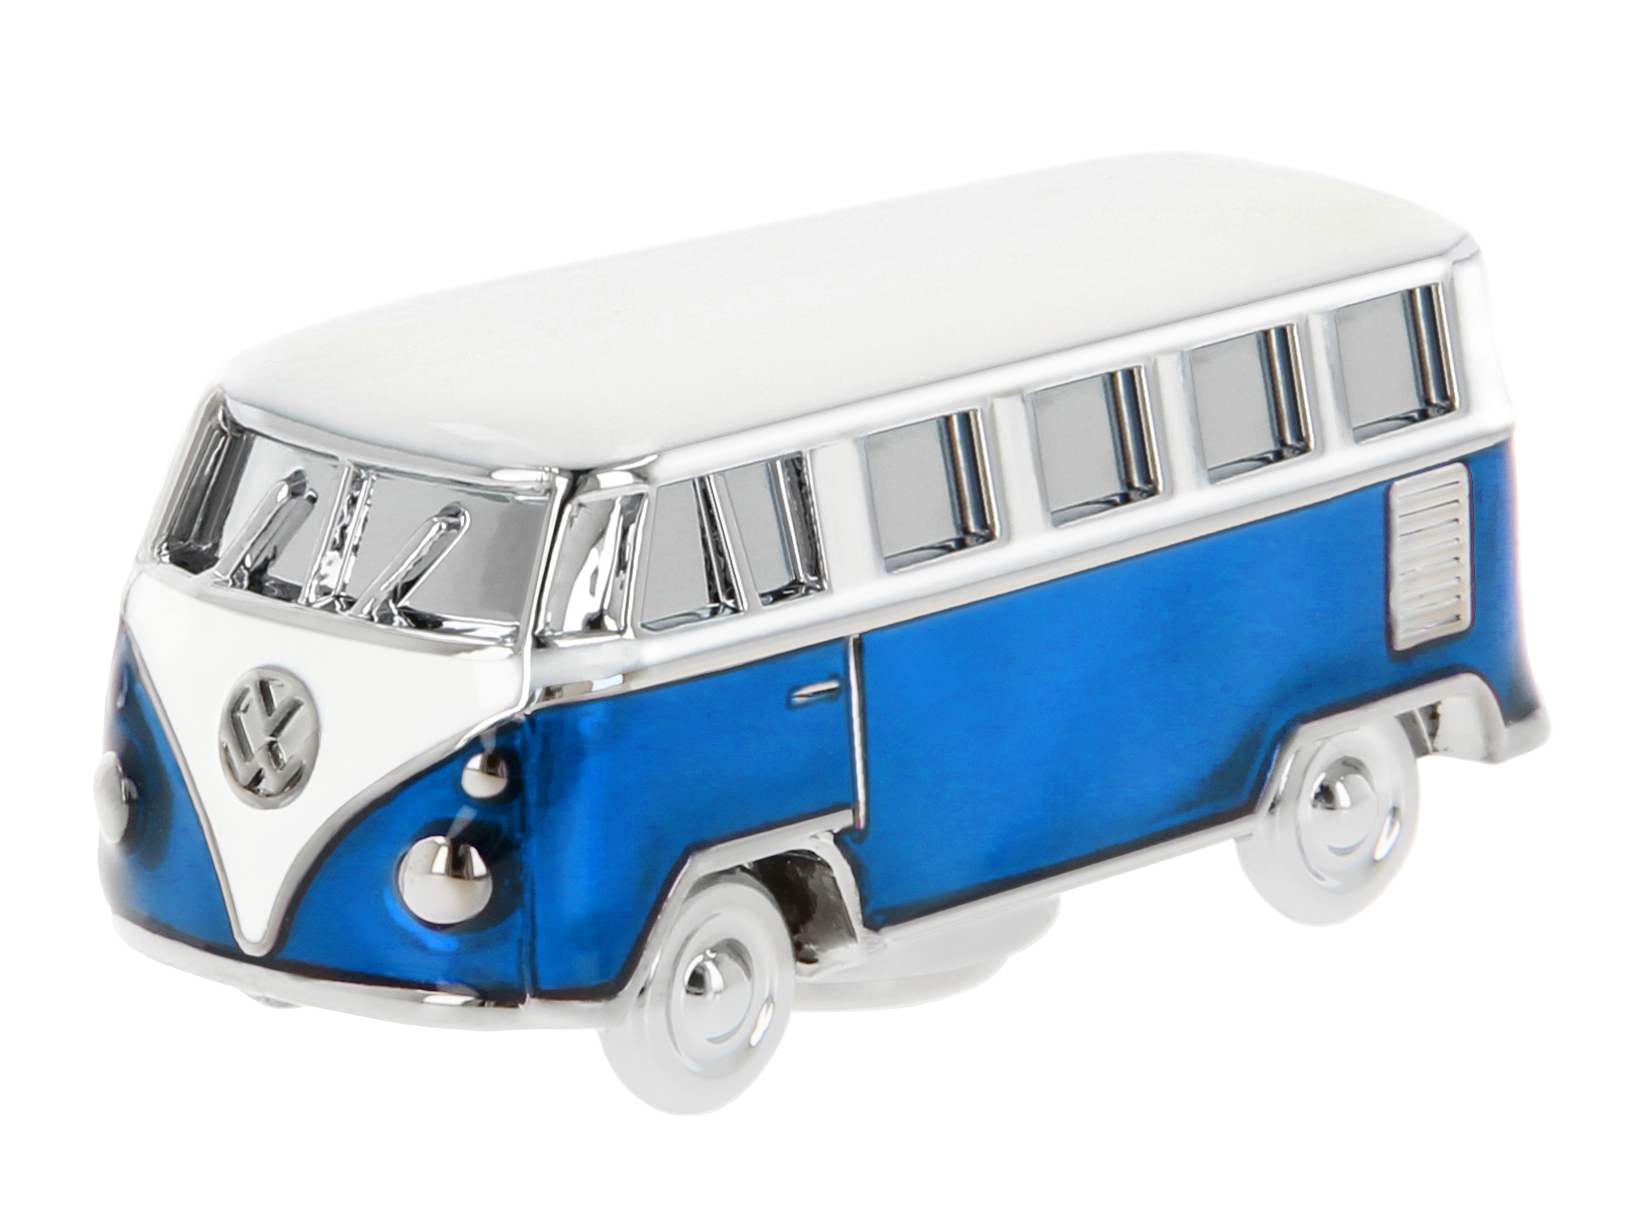 VOLKSWAGEN BUS VW T1 Combi 3D Aimant de Modèle Mini dans boîte cadeau - vert